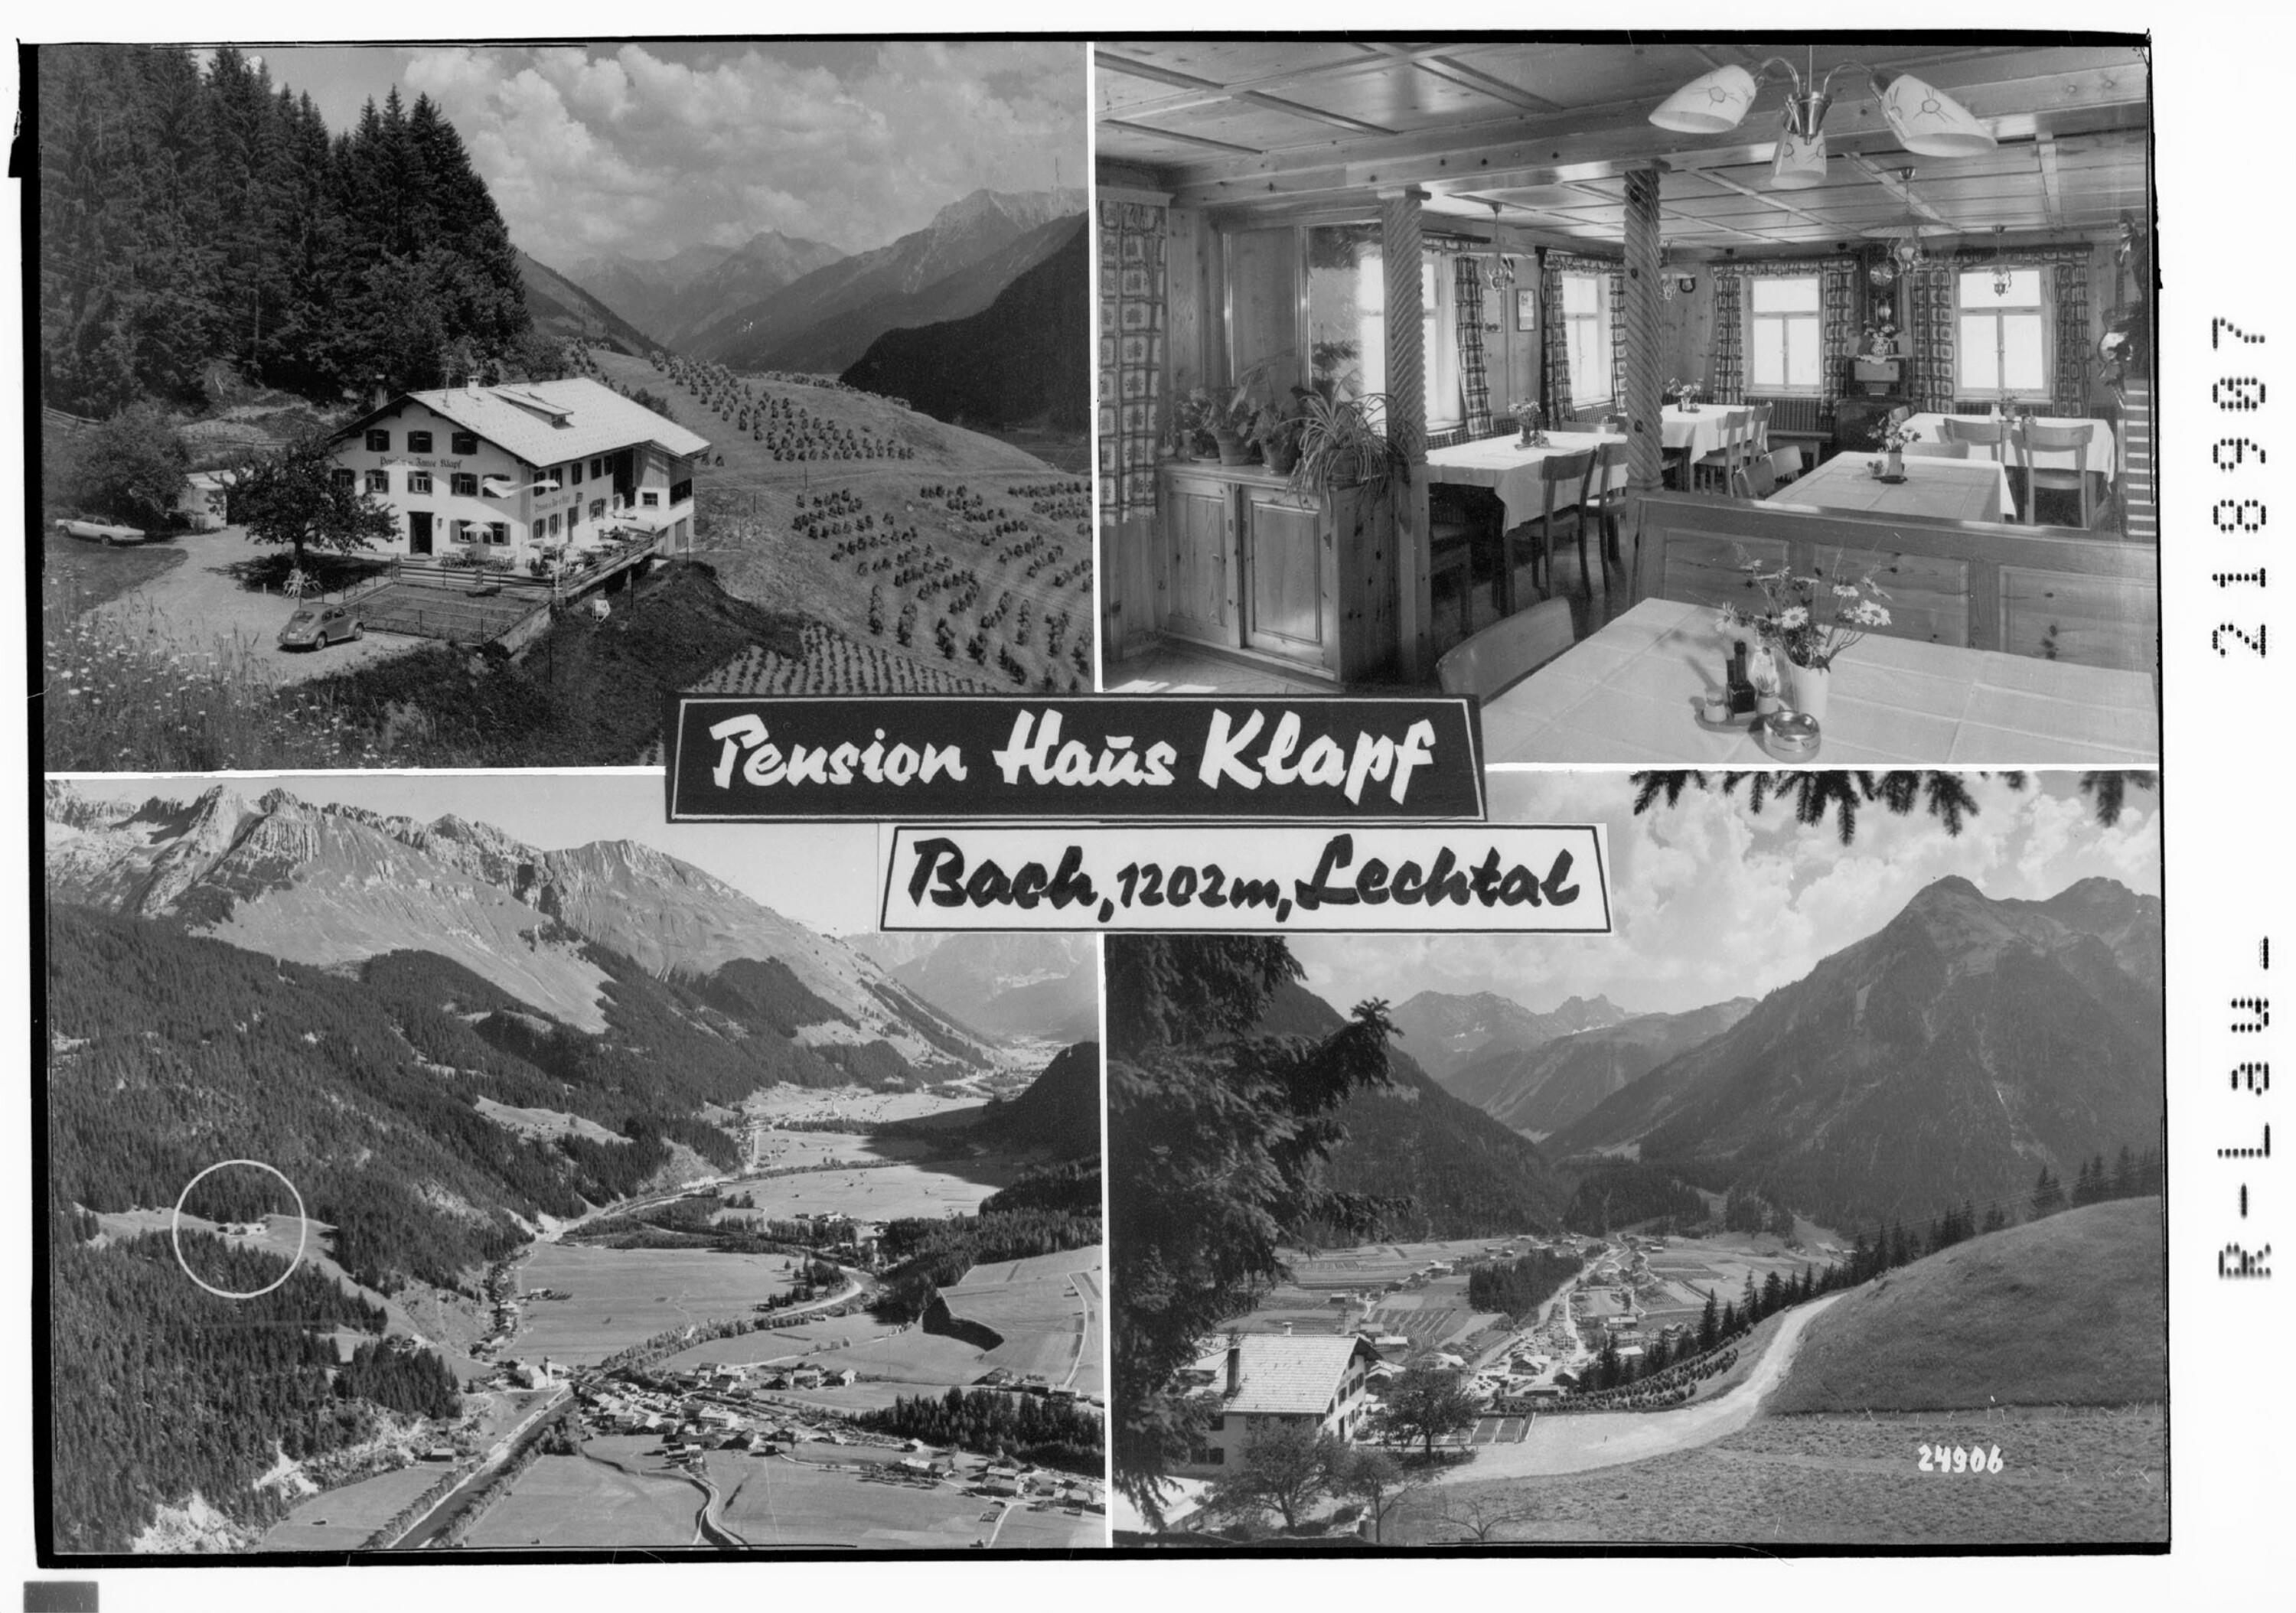 Pension Haus Klapf Bach 1200 m, Lechtal></div>


    <hr>
    <div class=